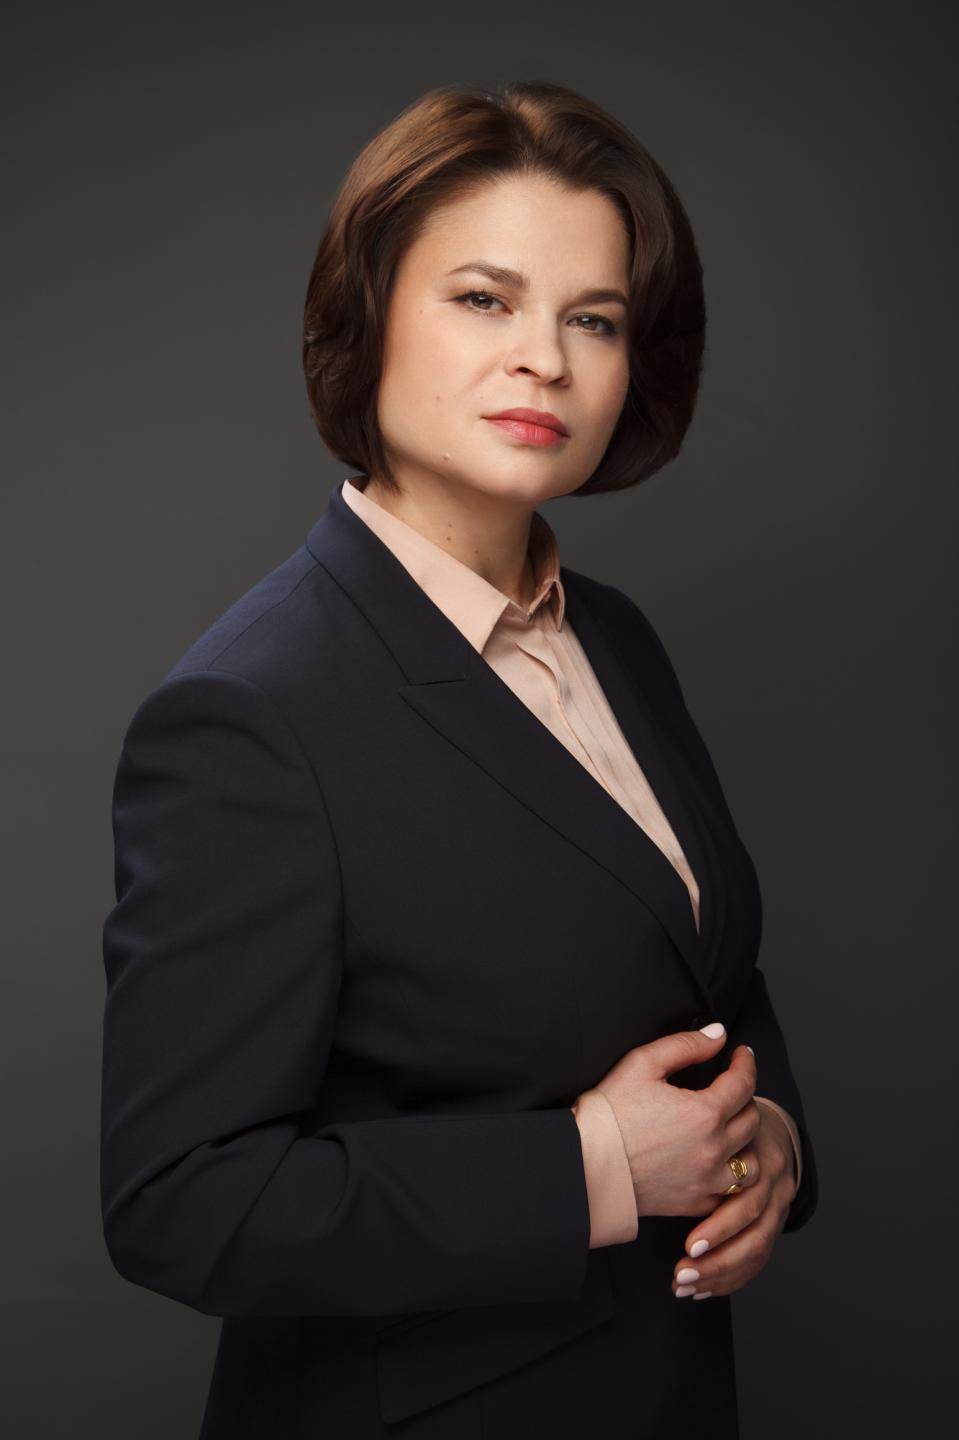 Макияж для женского бизнес-портрета | Волгоград